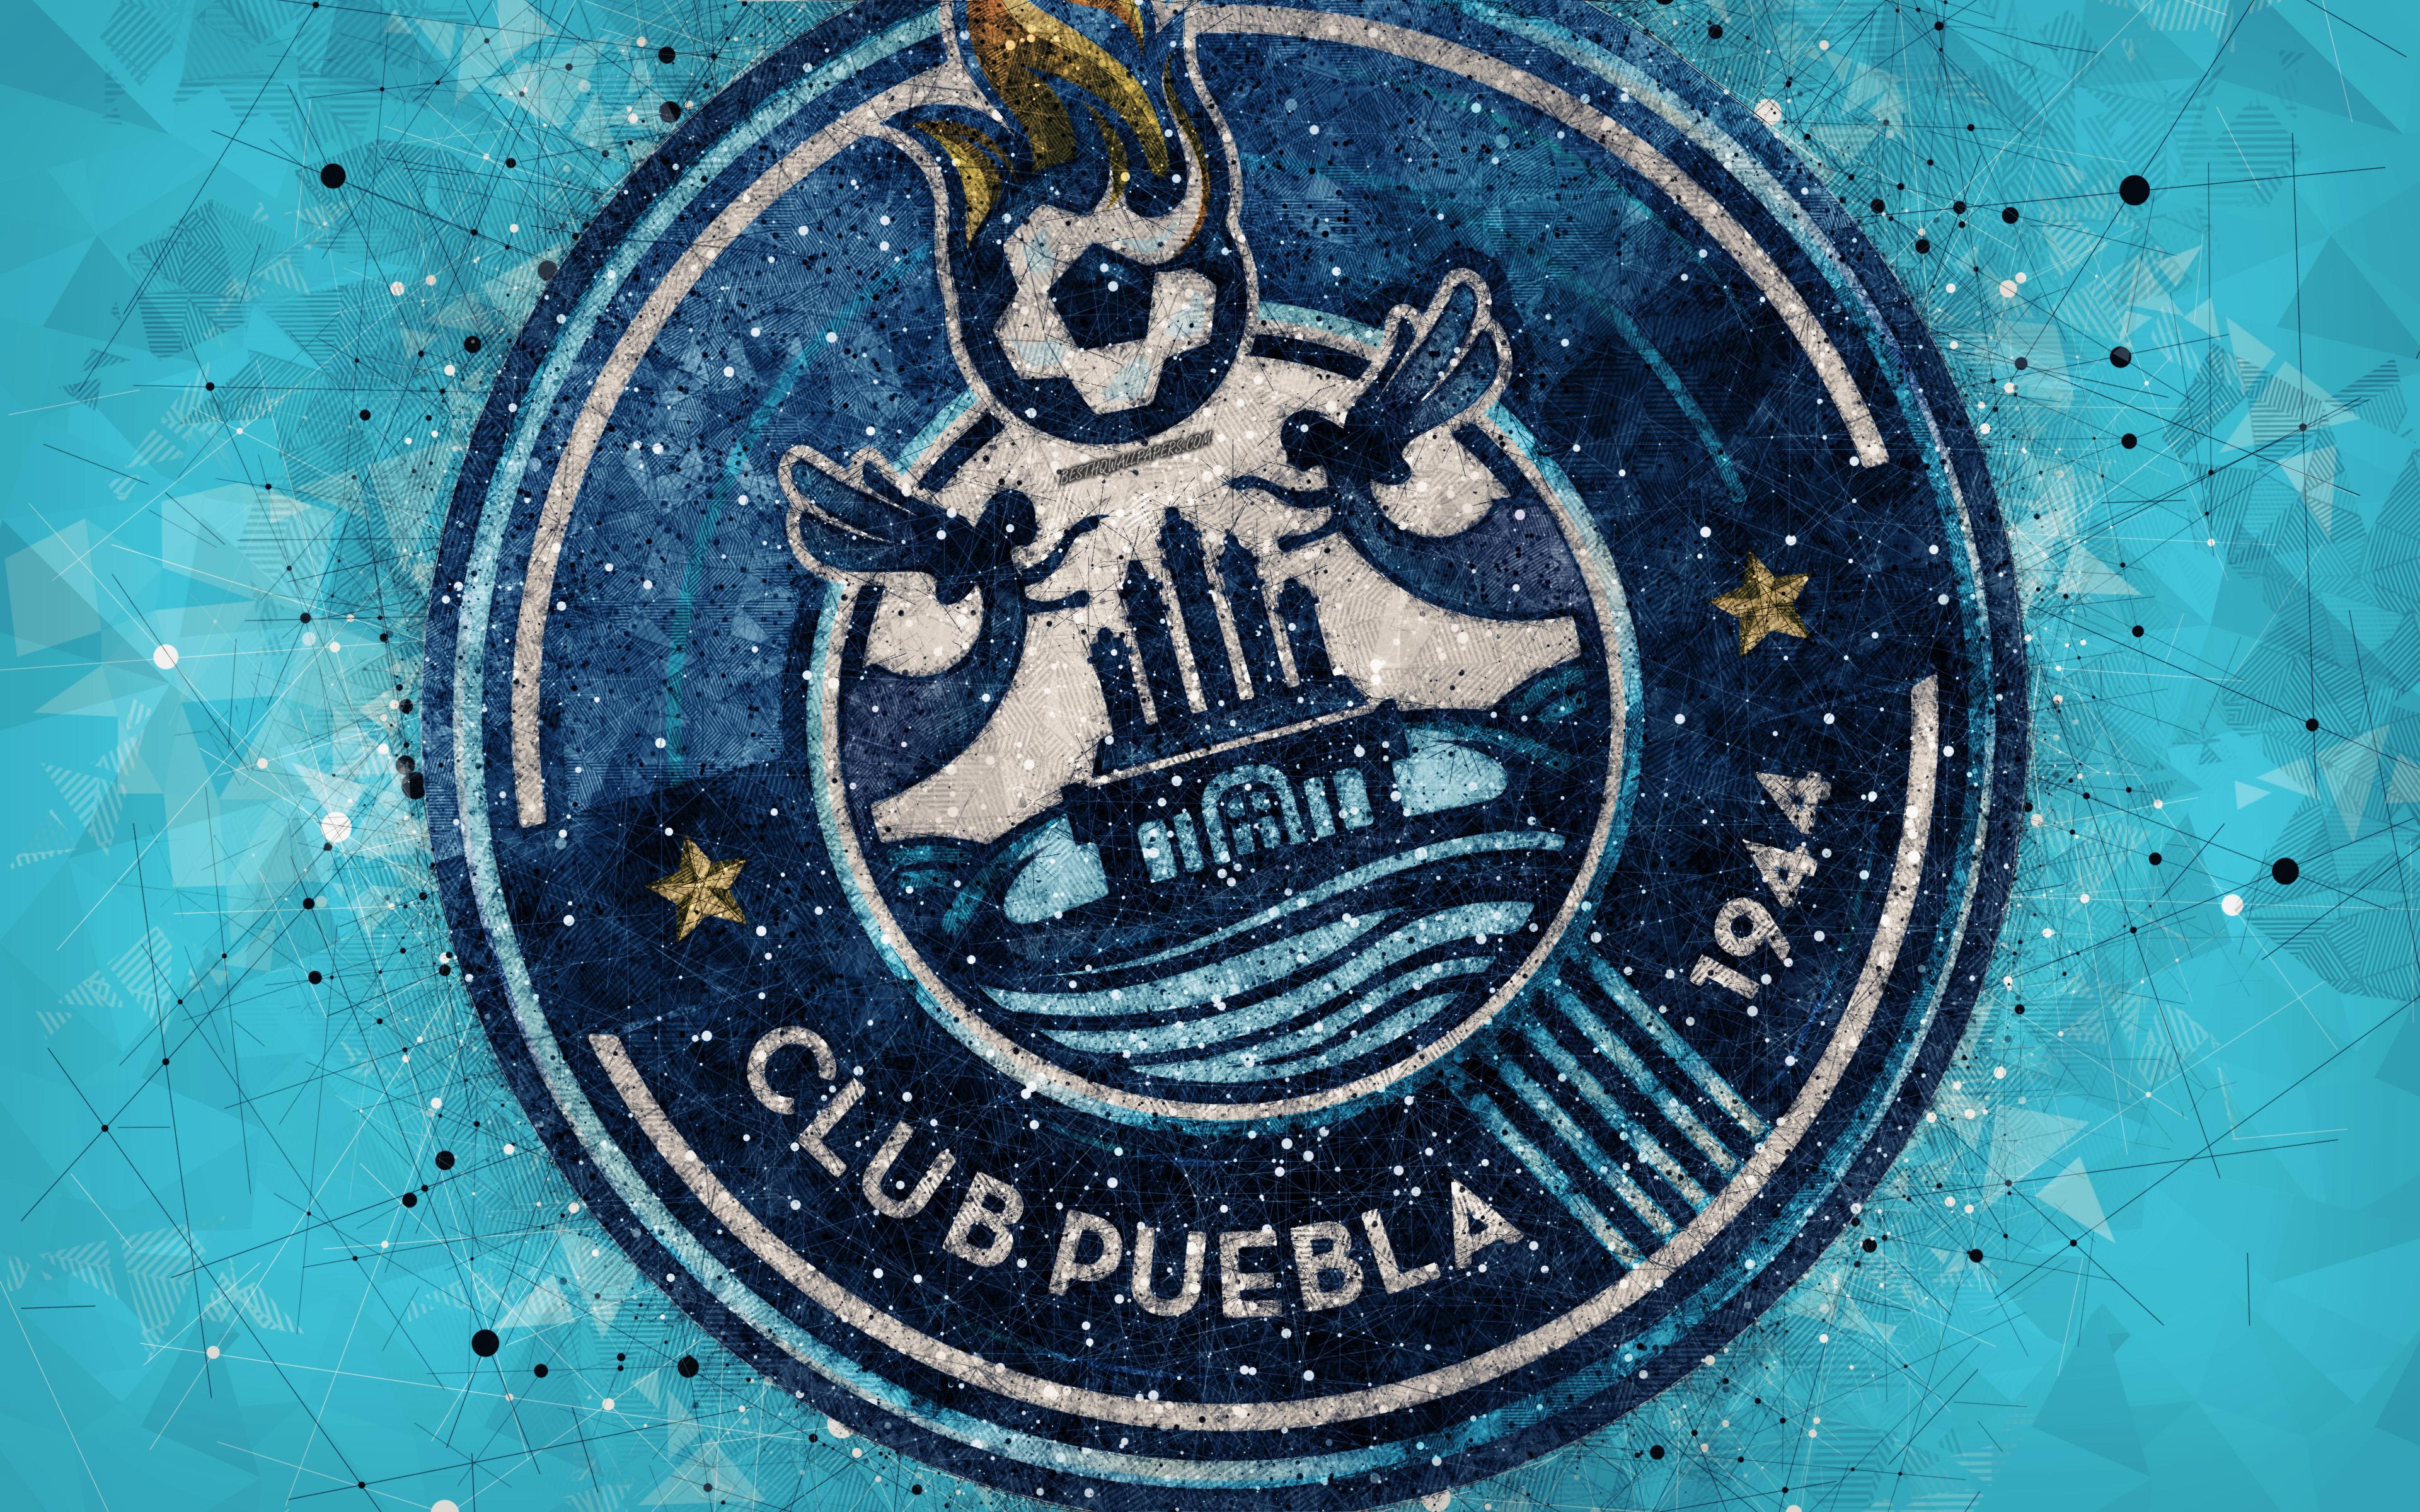 Download wallpaper Puebla FC, 4k, geometric art, logo, Mexican